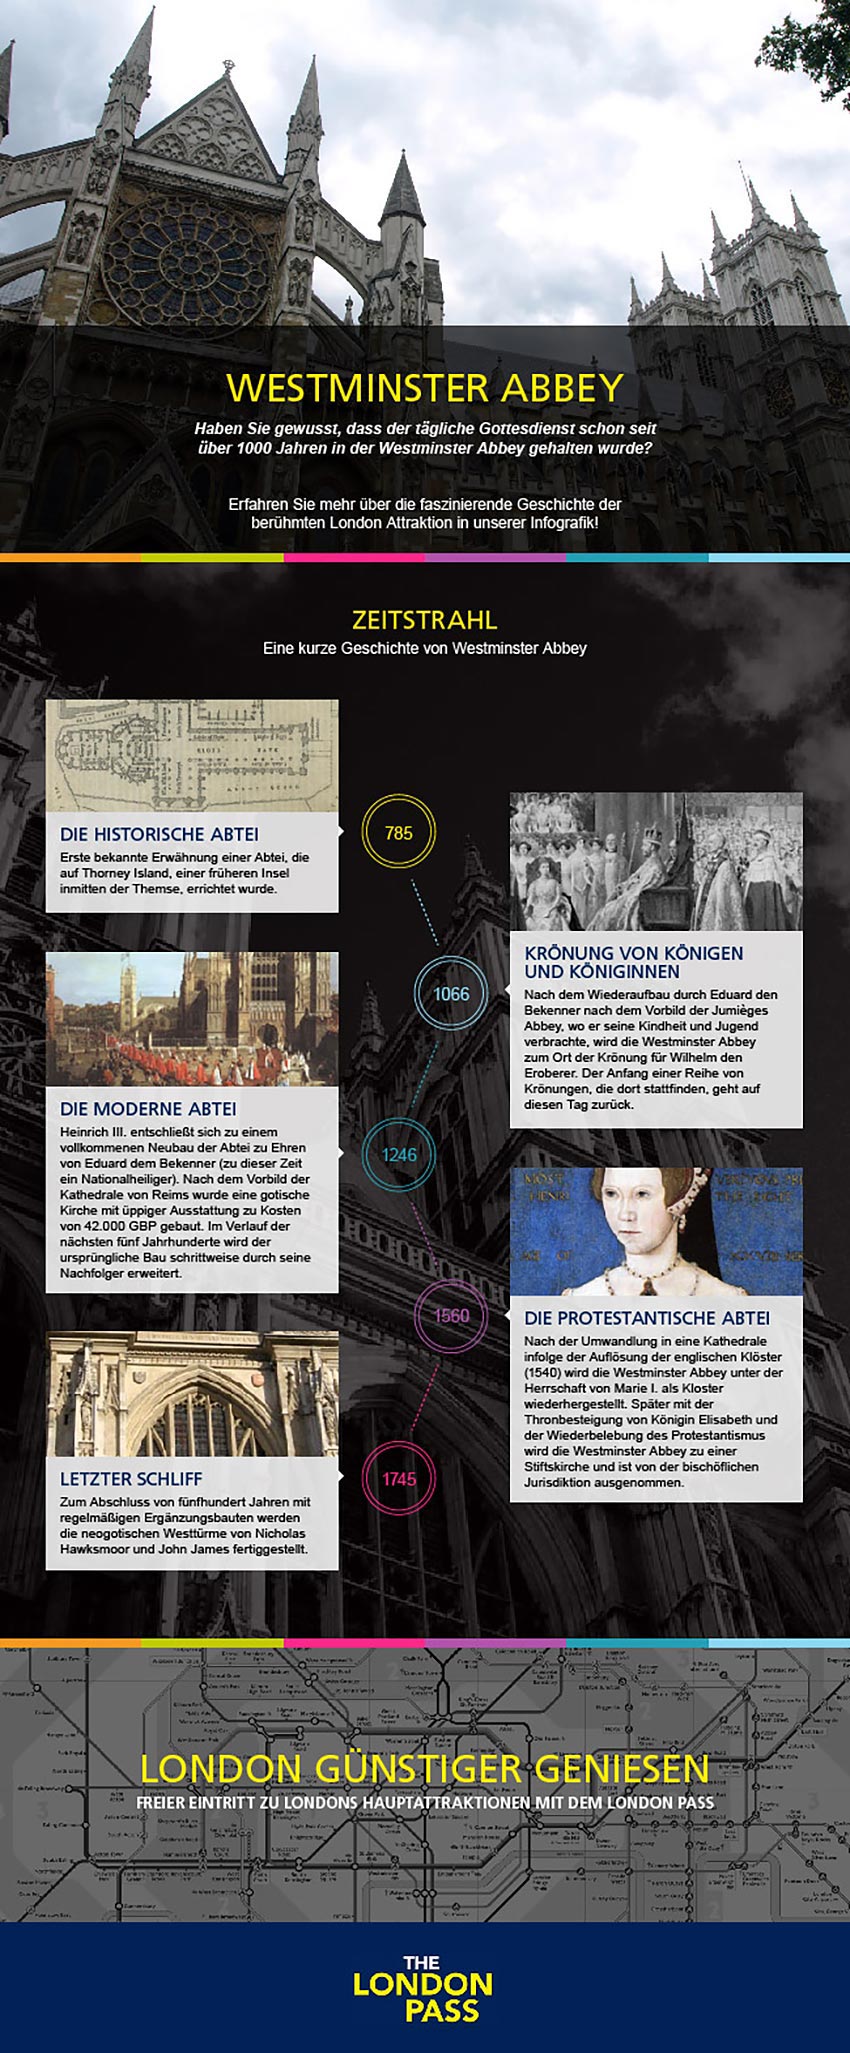 Erfahren Sie mehr über die Geschichte der Westminster Abbey.